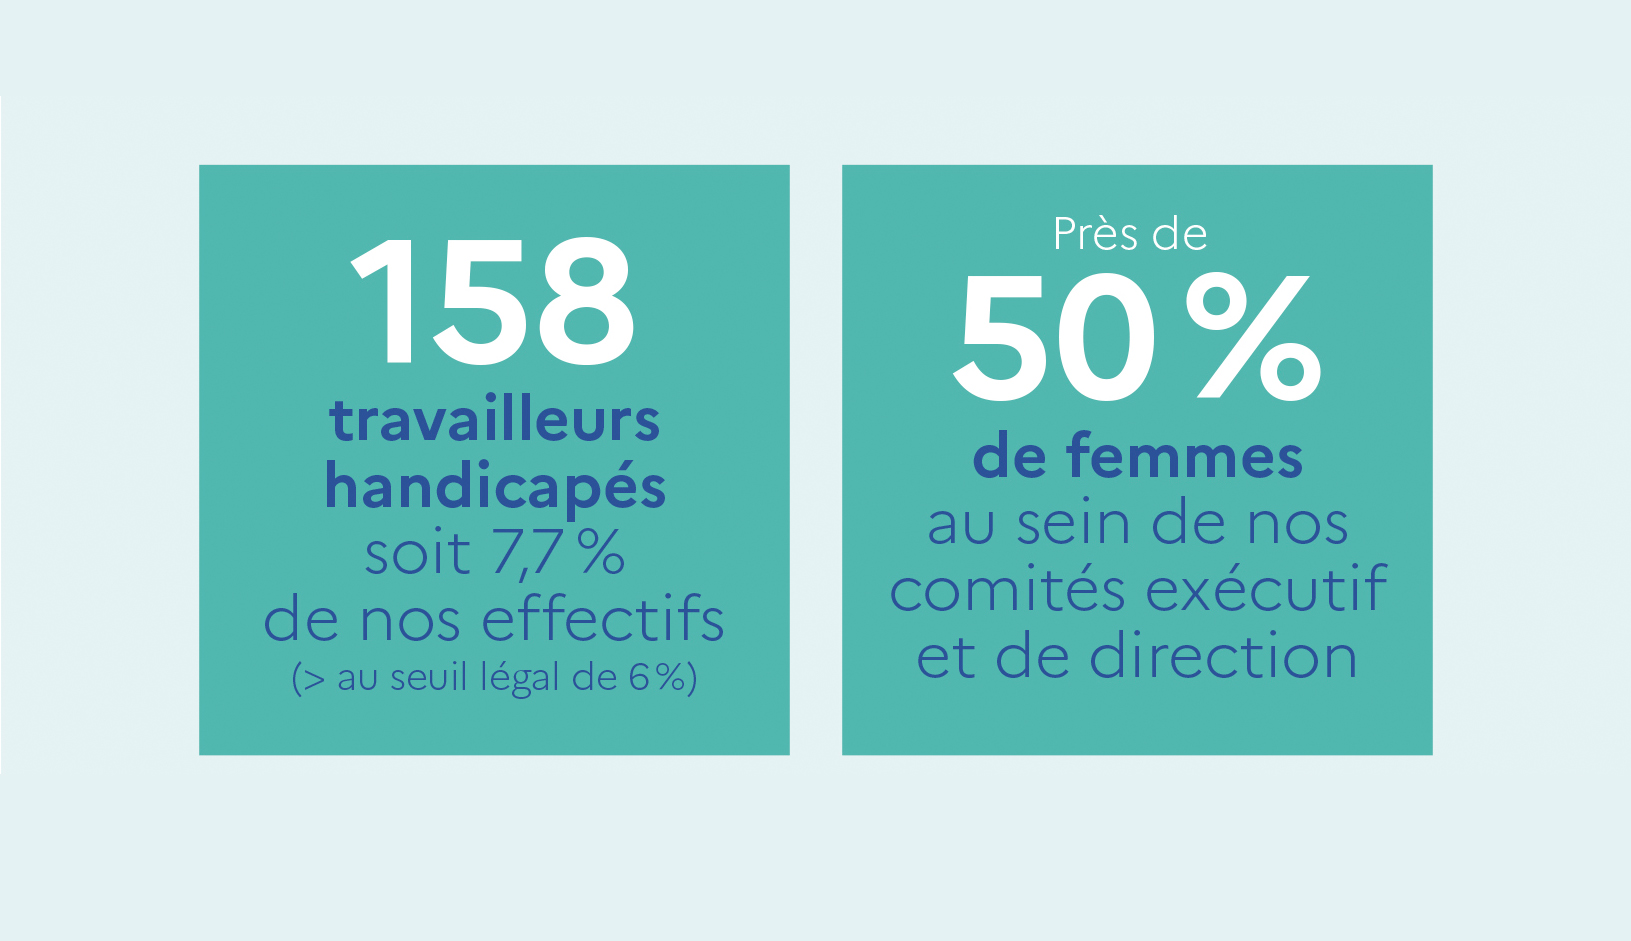 158 travailleurs en situation de handicap à l'ASP, soit 7,7% de ses effectifs et près de 50% de femmes au sein de nos comités exécutif et de direction